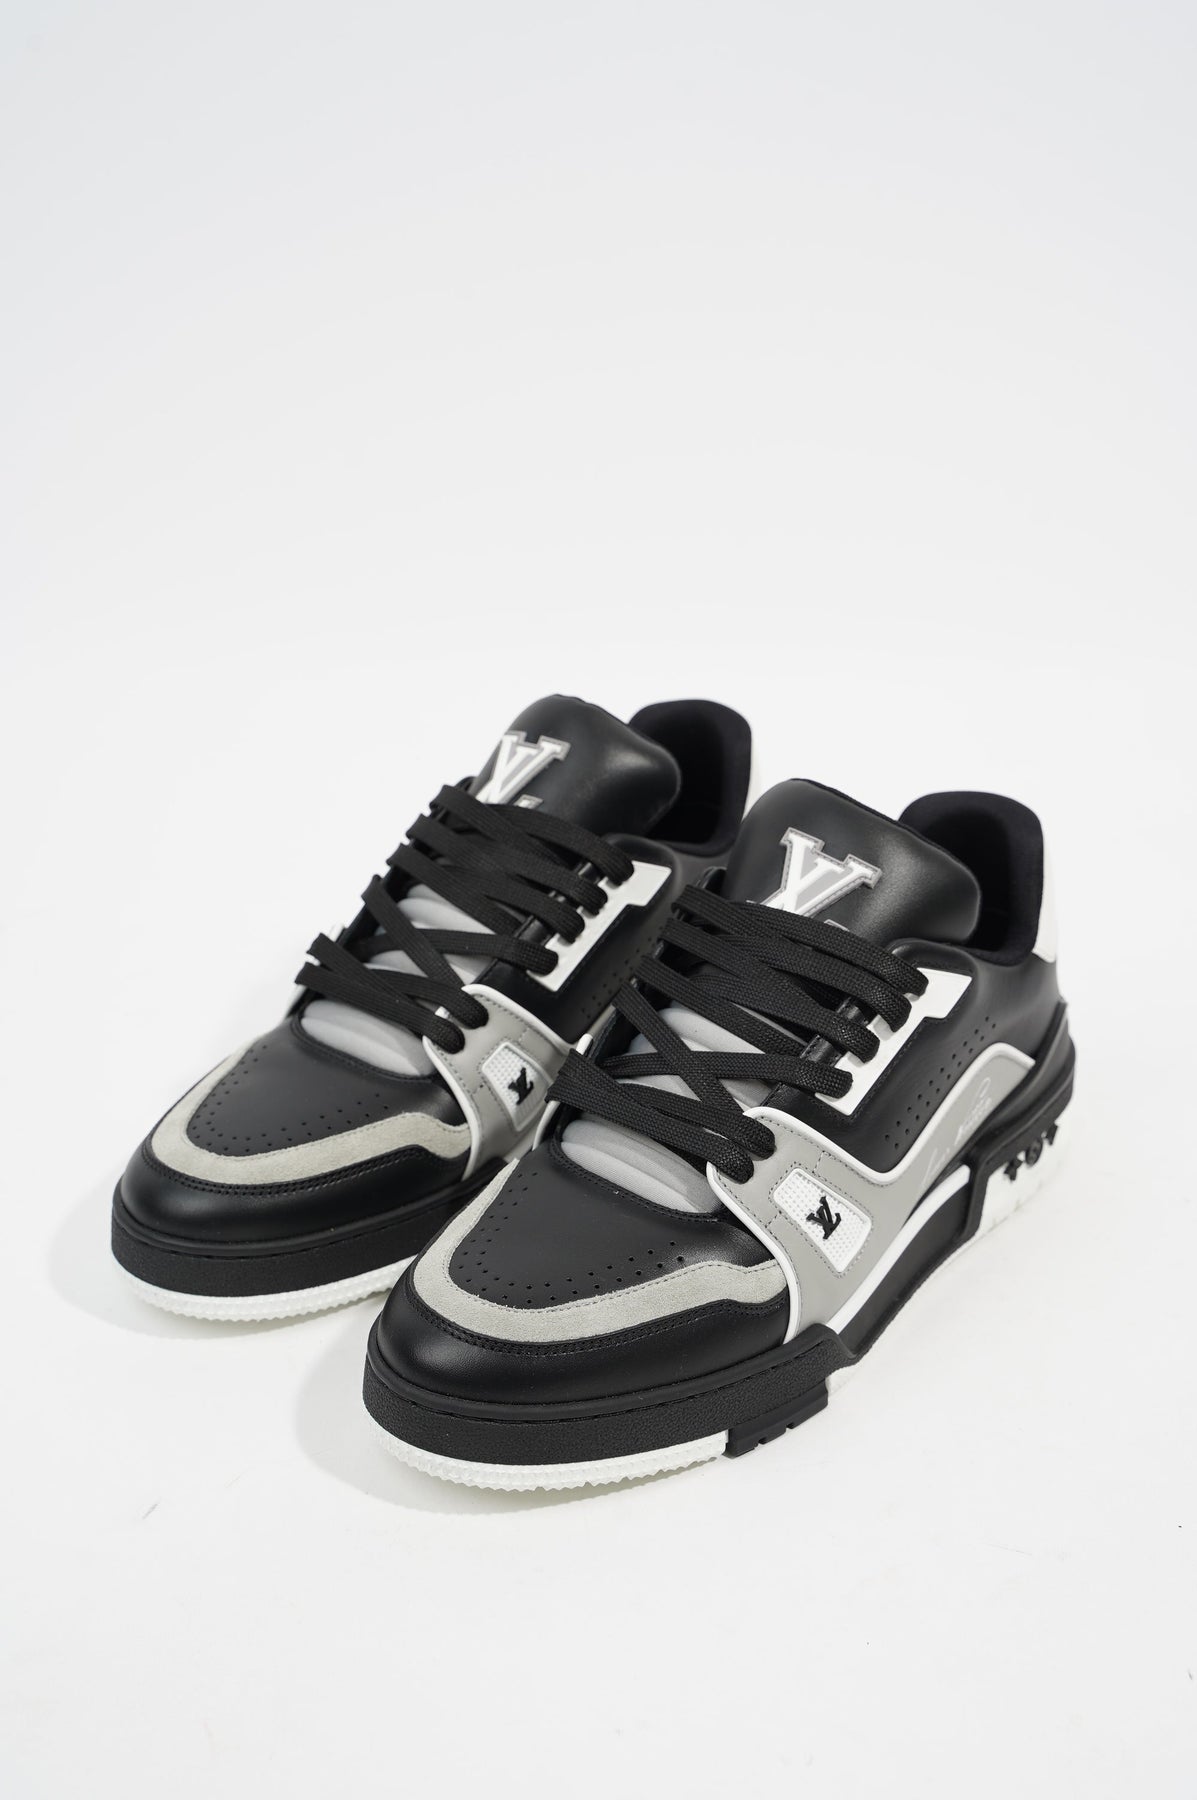 Louis Vuitton Mens Virgil Abloh Sneaker EU 41 / UK 7 – Luxe Collective